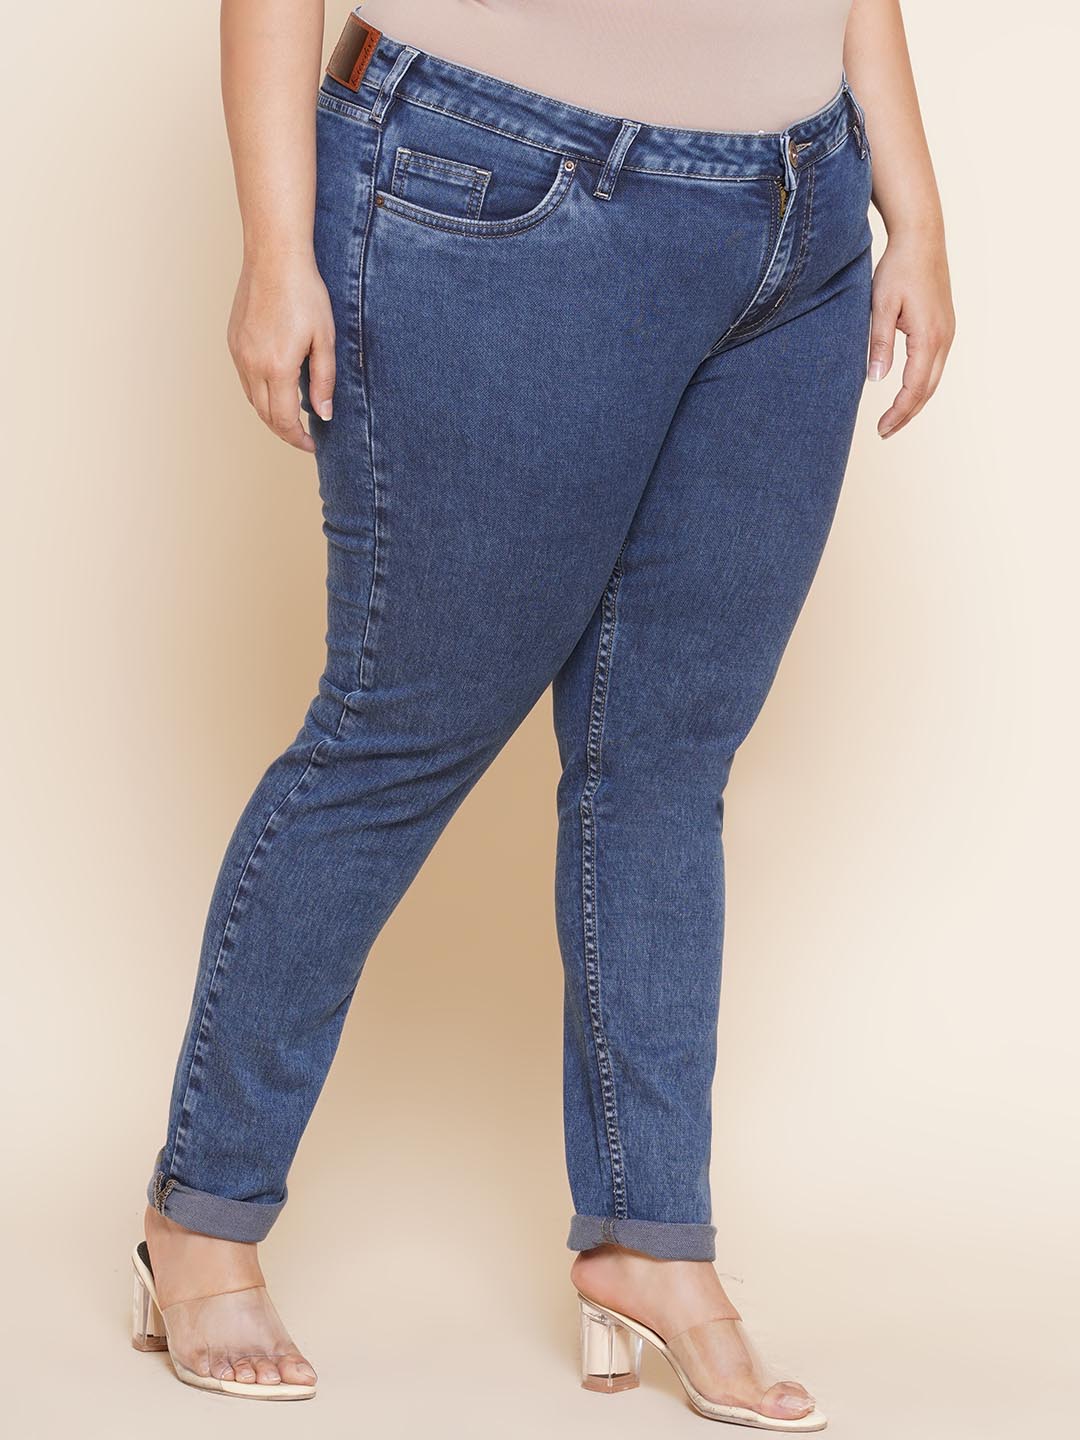 bottomwear_kiaahvi/jeans/KIJ6009/kij6009-3.jpg